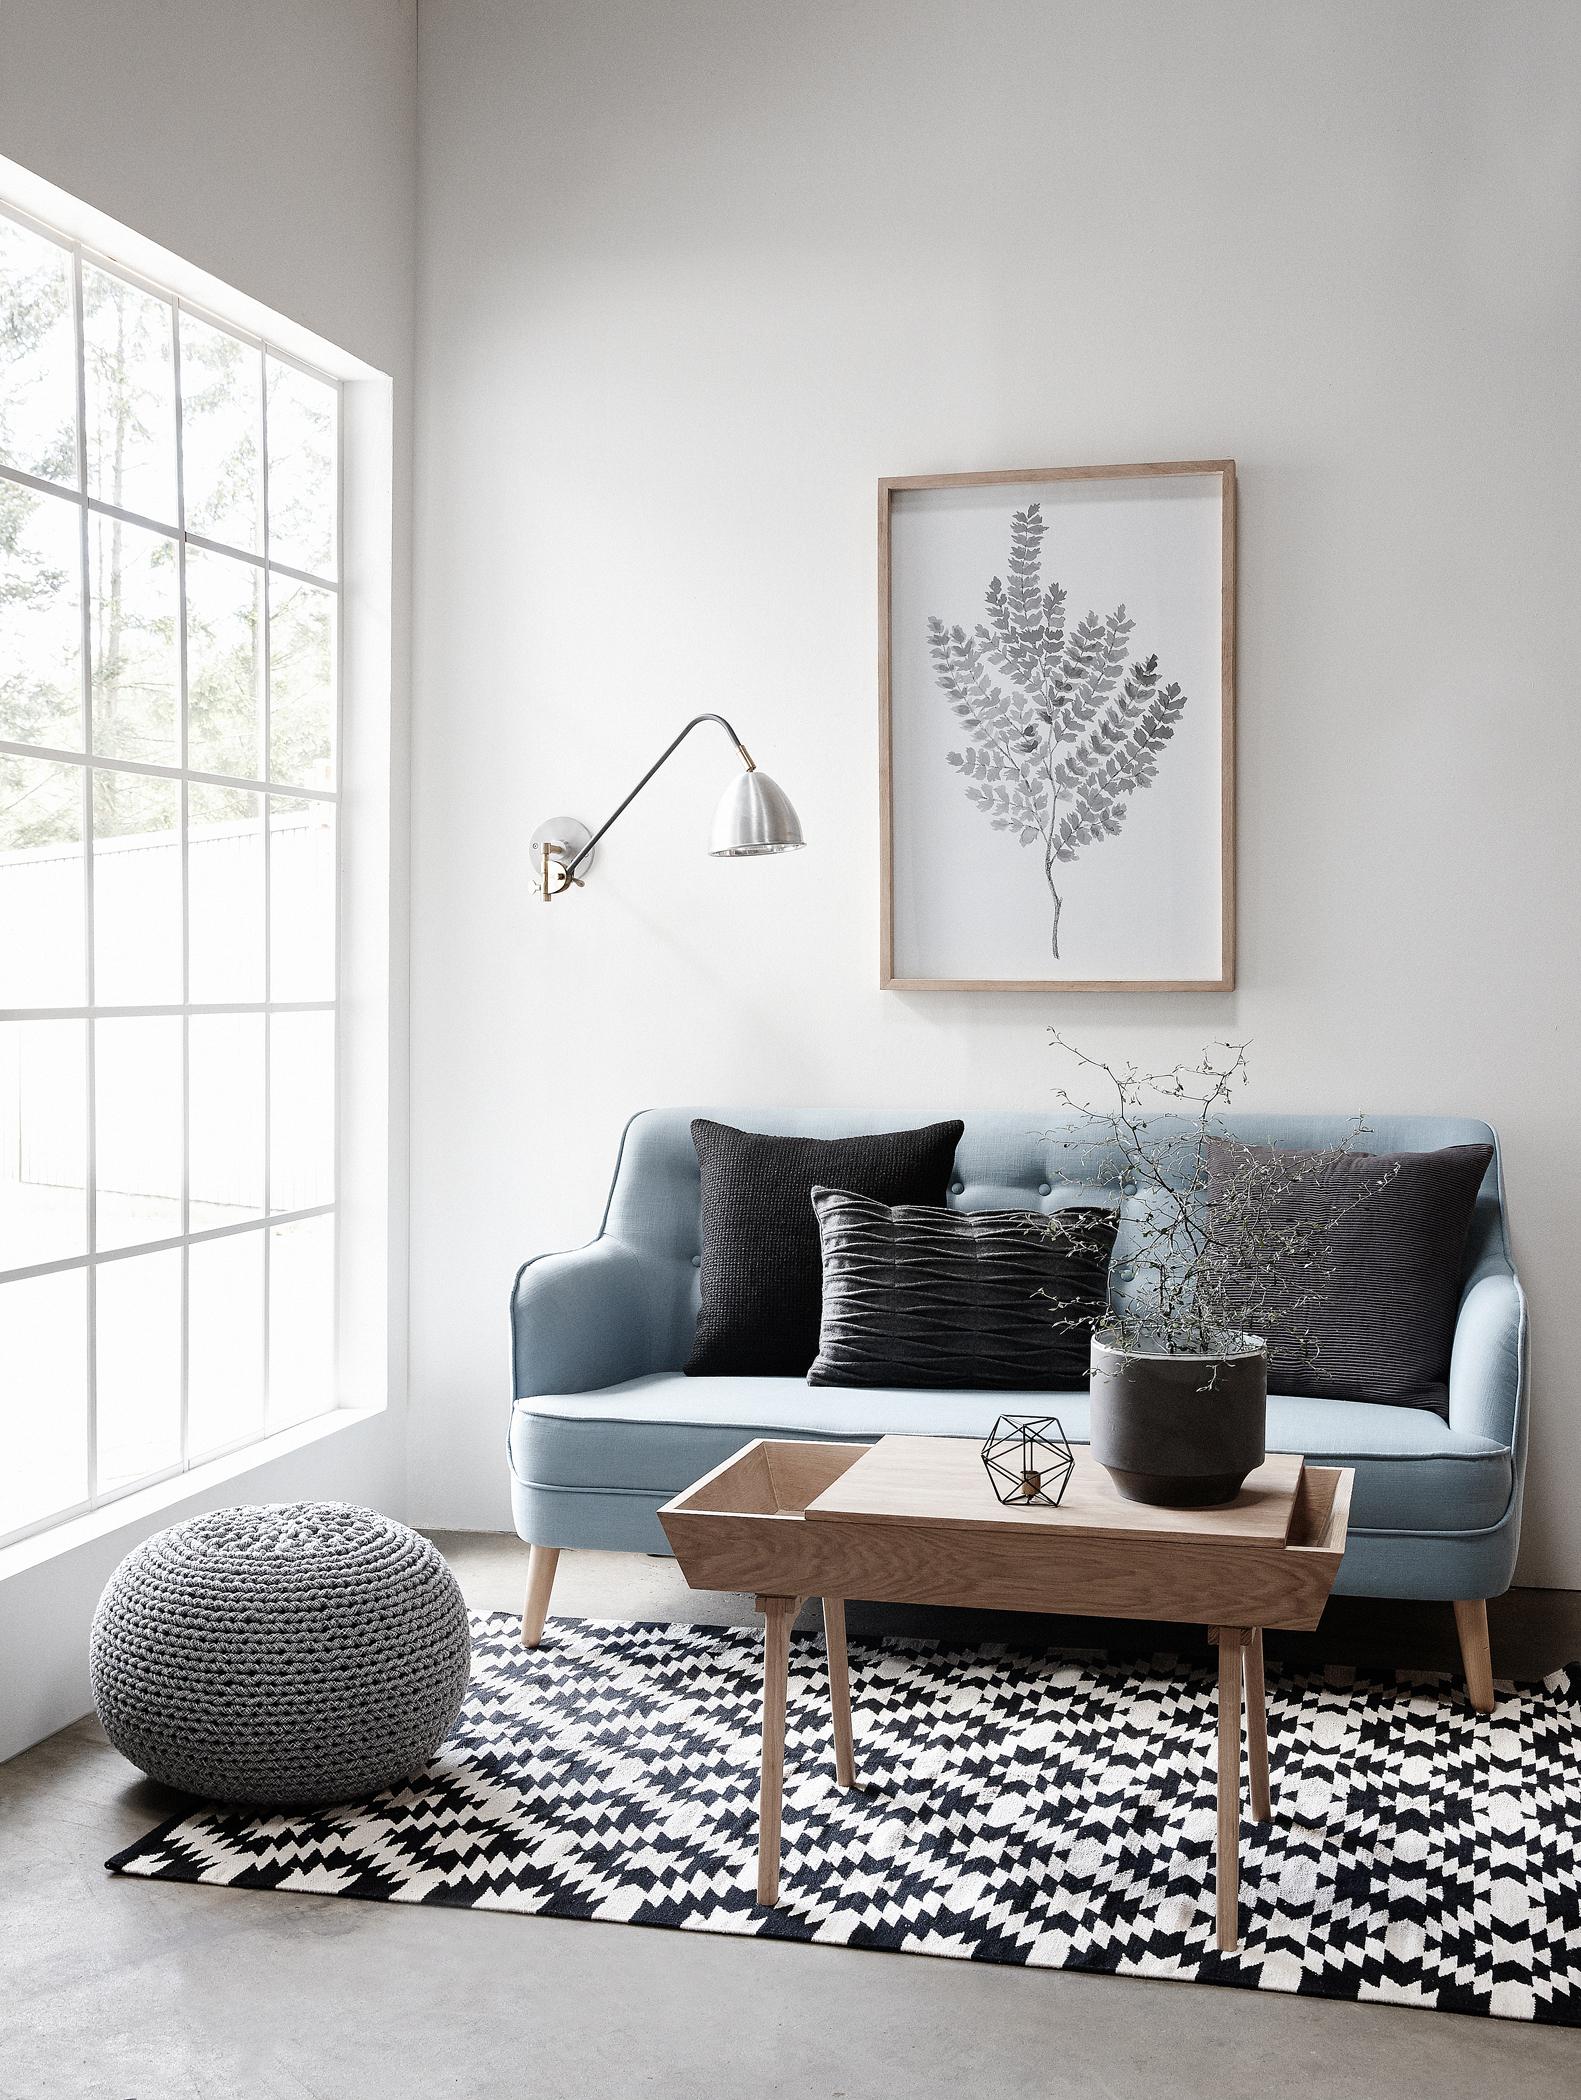 Skandinavischer Look im Wohnzimmer #couchtisch #holzmöbel #teppich #pouf #wandleuchte #sofa #blauessofa #zimmergestaltung ©Car Möbel